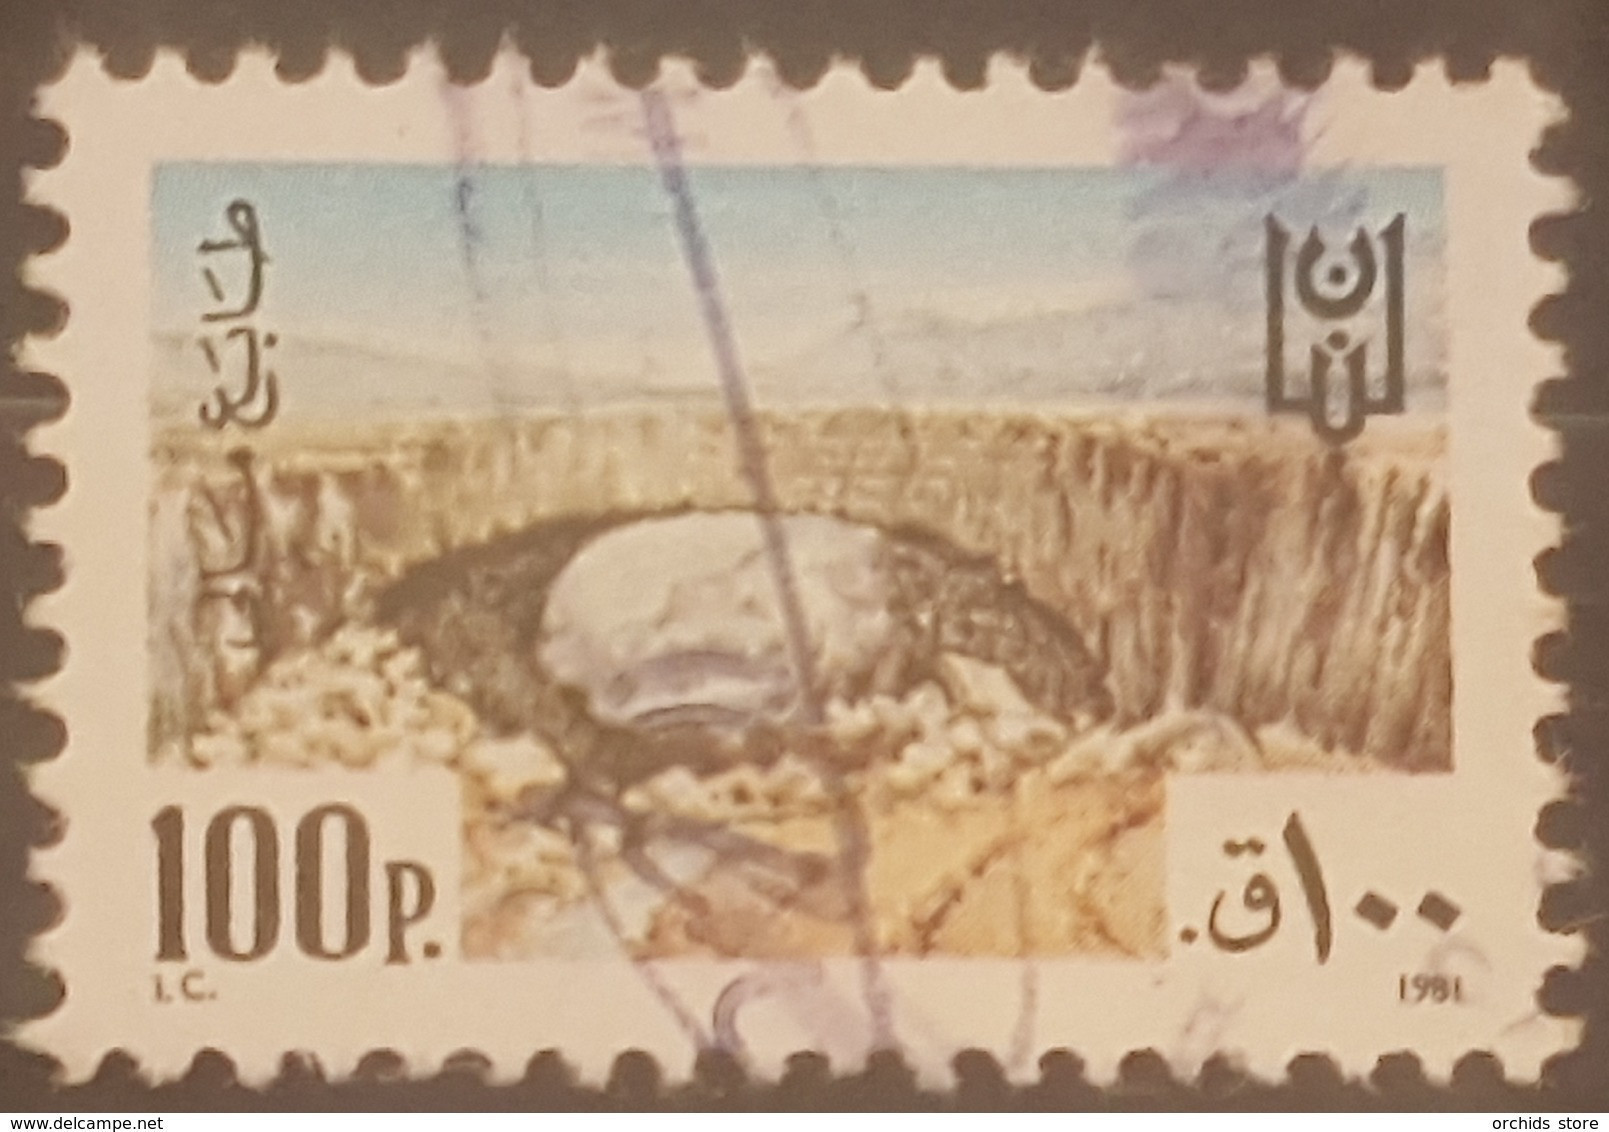 Lebanon 1981 Fiscal Revenue Stamp 100p - Lebanon